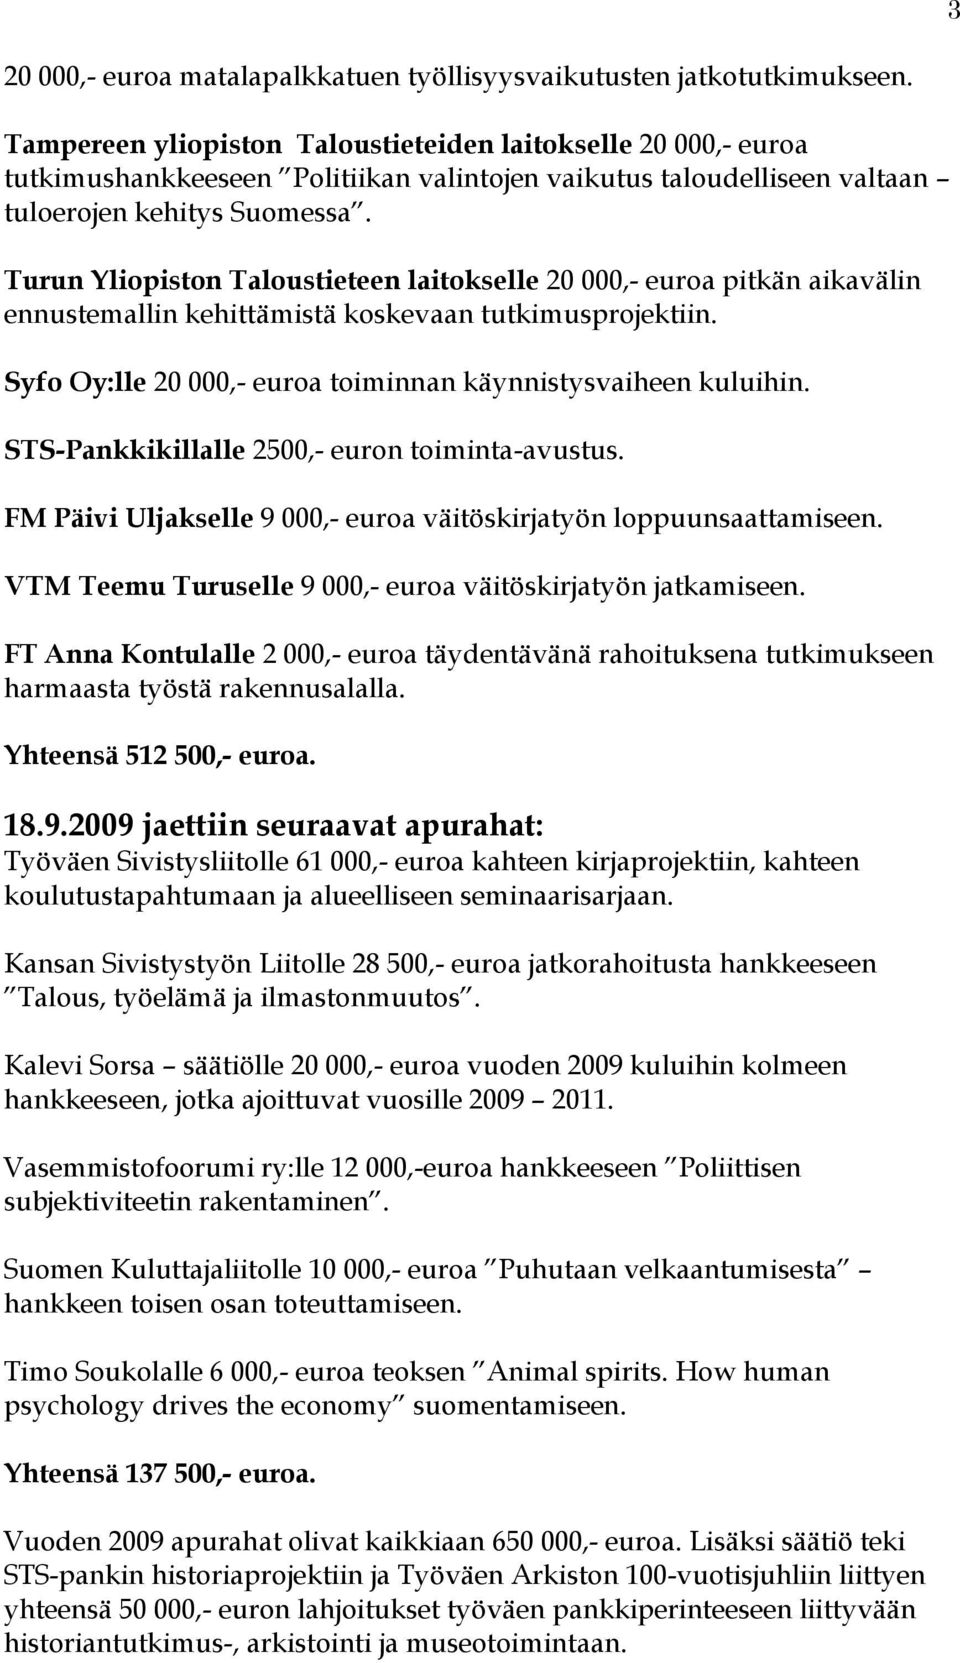 Turun Yliopiston Taloustieteen laitokselle 20 000,- euroa pitkän aikavälin ennustemallin kehittämistä koskevaan tutkimusprojektiin. Syfo Oy:lle 20 000,- euroa toiminnan käynnistysvaiheen kuluihin.